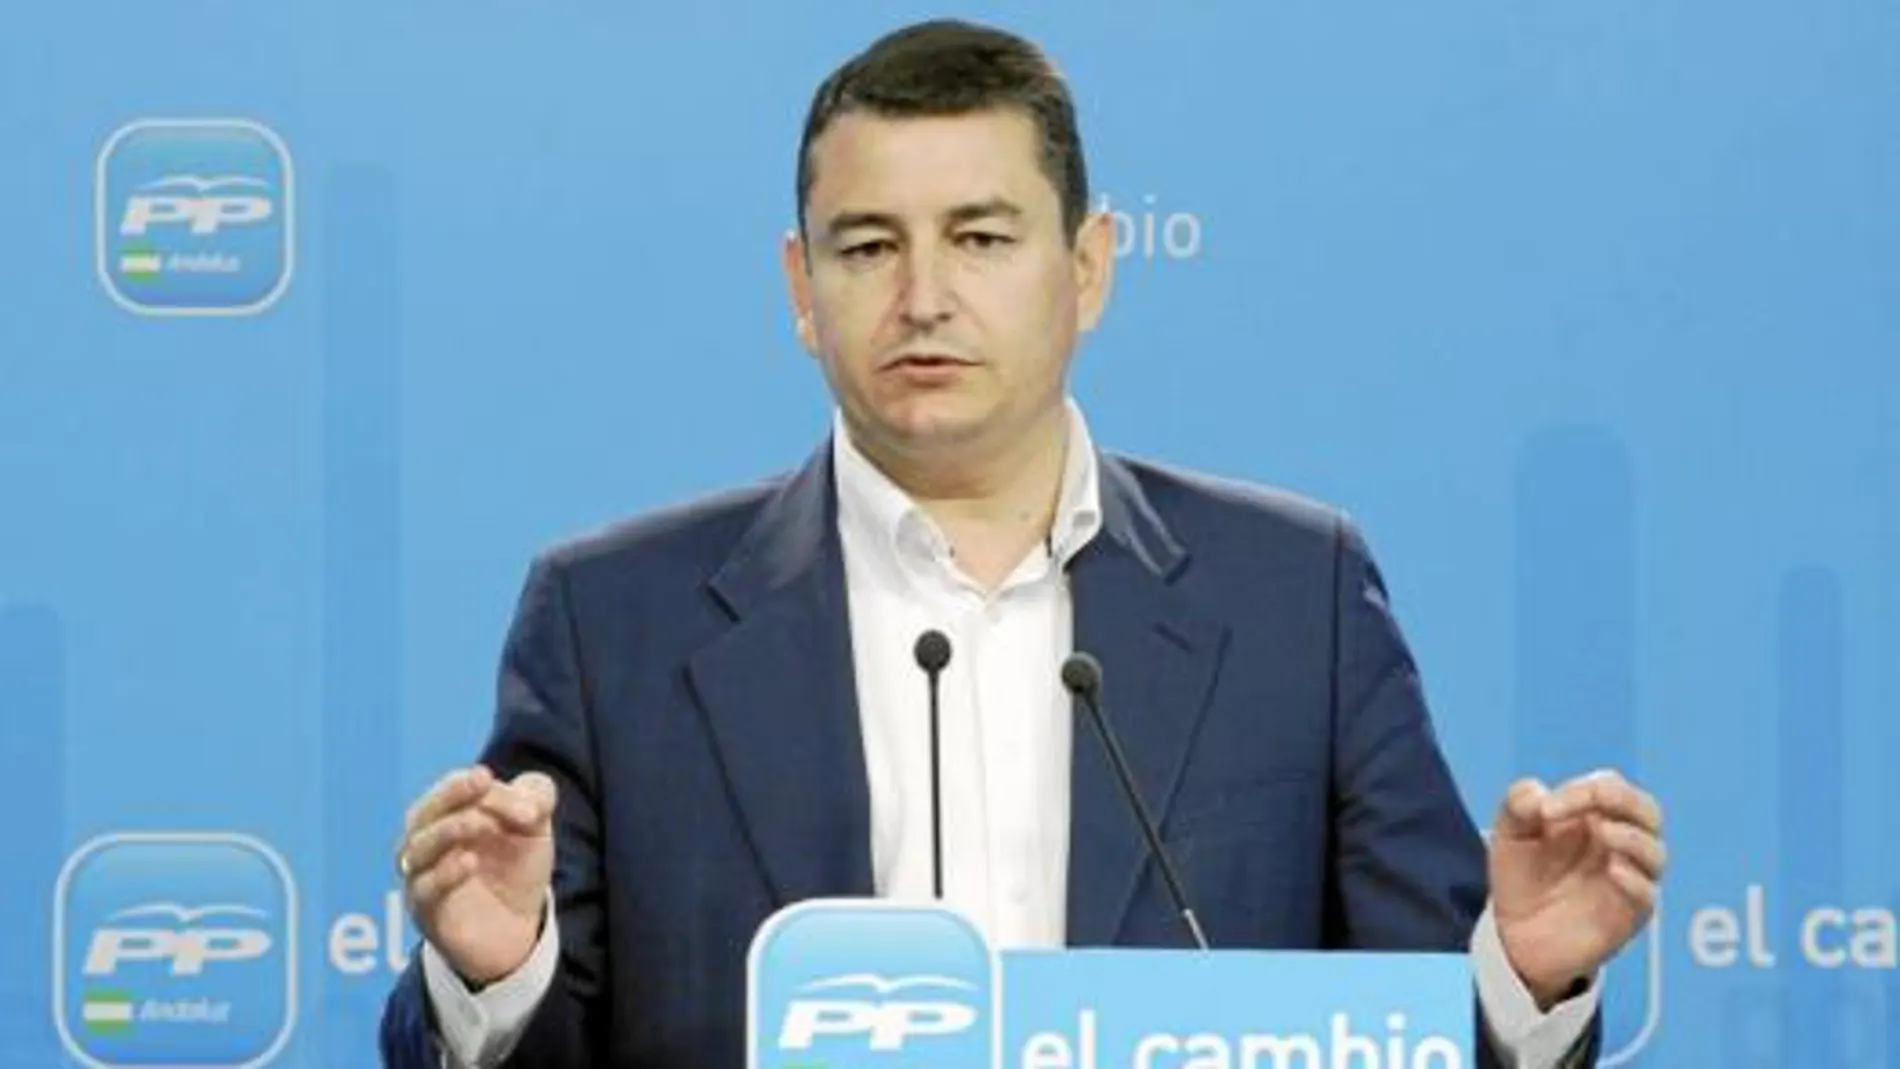 El secretario general de los socialistas andaluces, Antonio Sanz, en la sede regional del partido en Sevilla